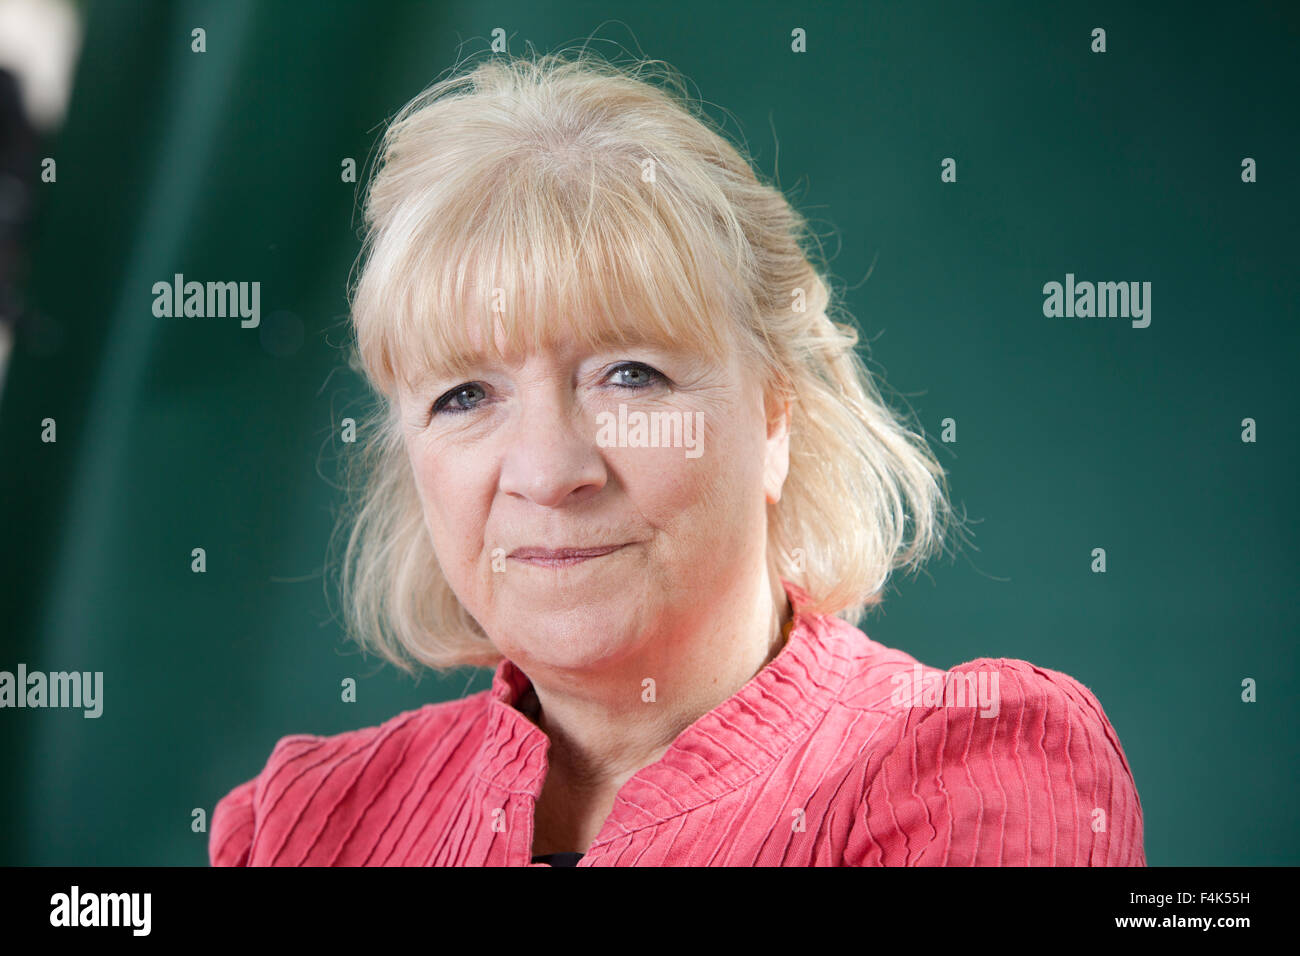 Polly Toynbee, le journaliste britannique, à l'Edinburgh International Book Festival 2015. Edimbourg, Ecosse. 28 août 2015 Banque D'Images